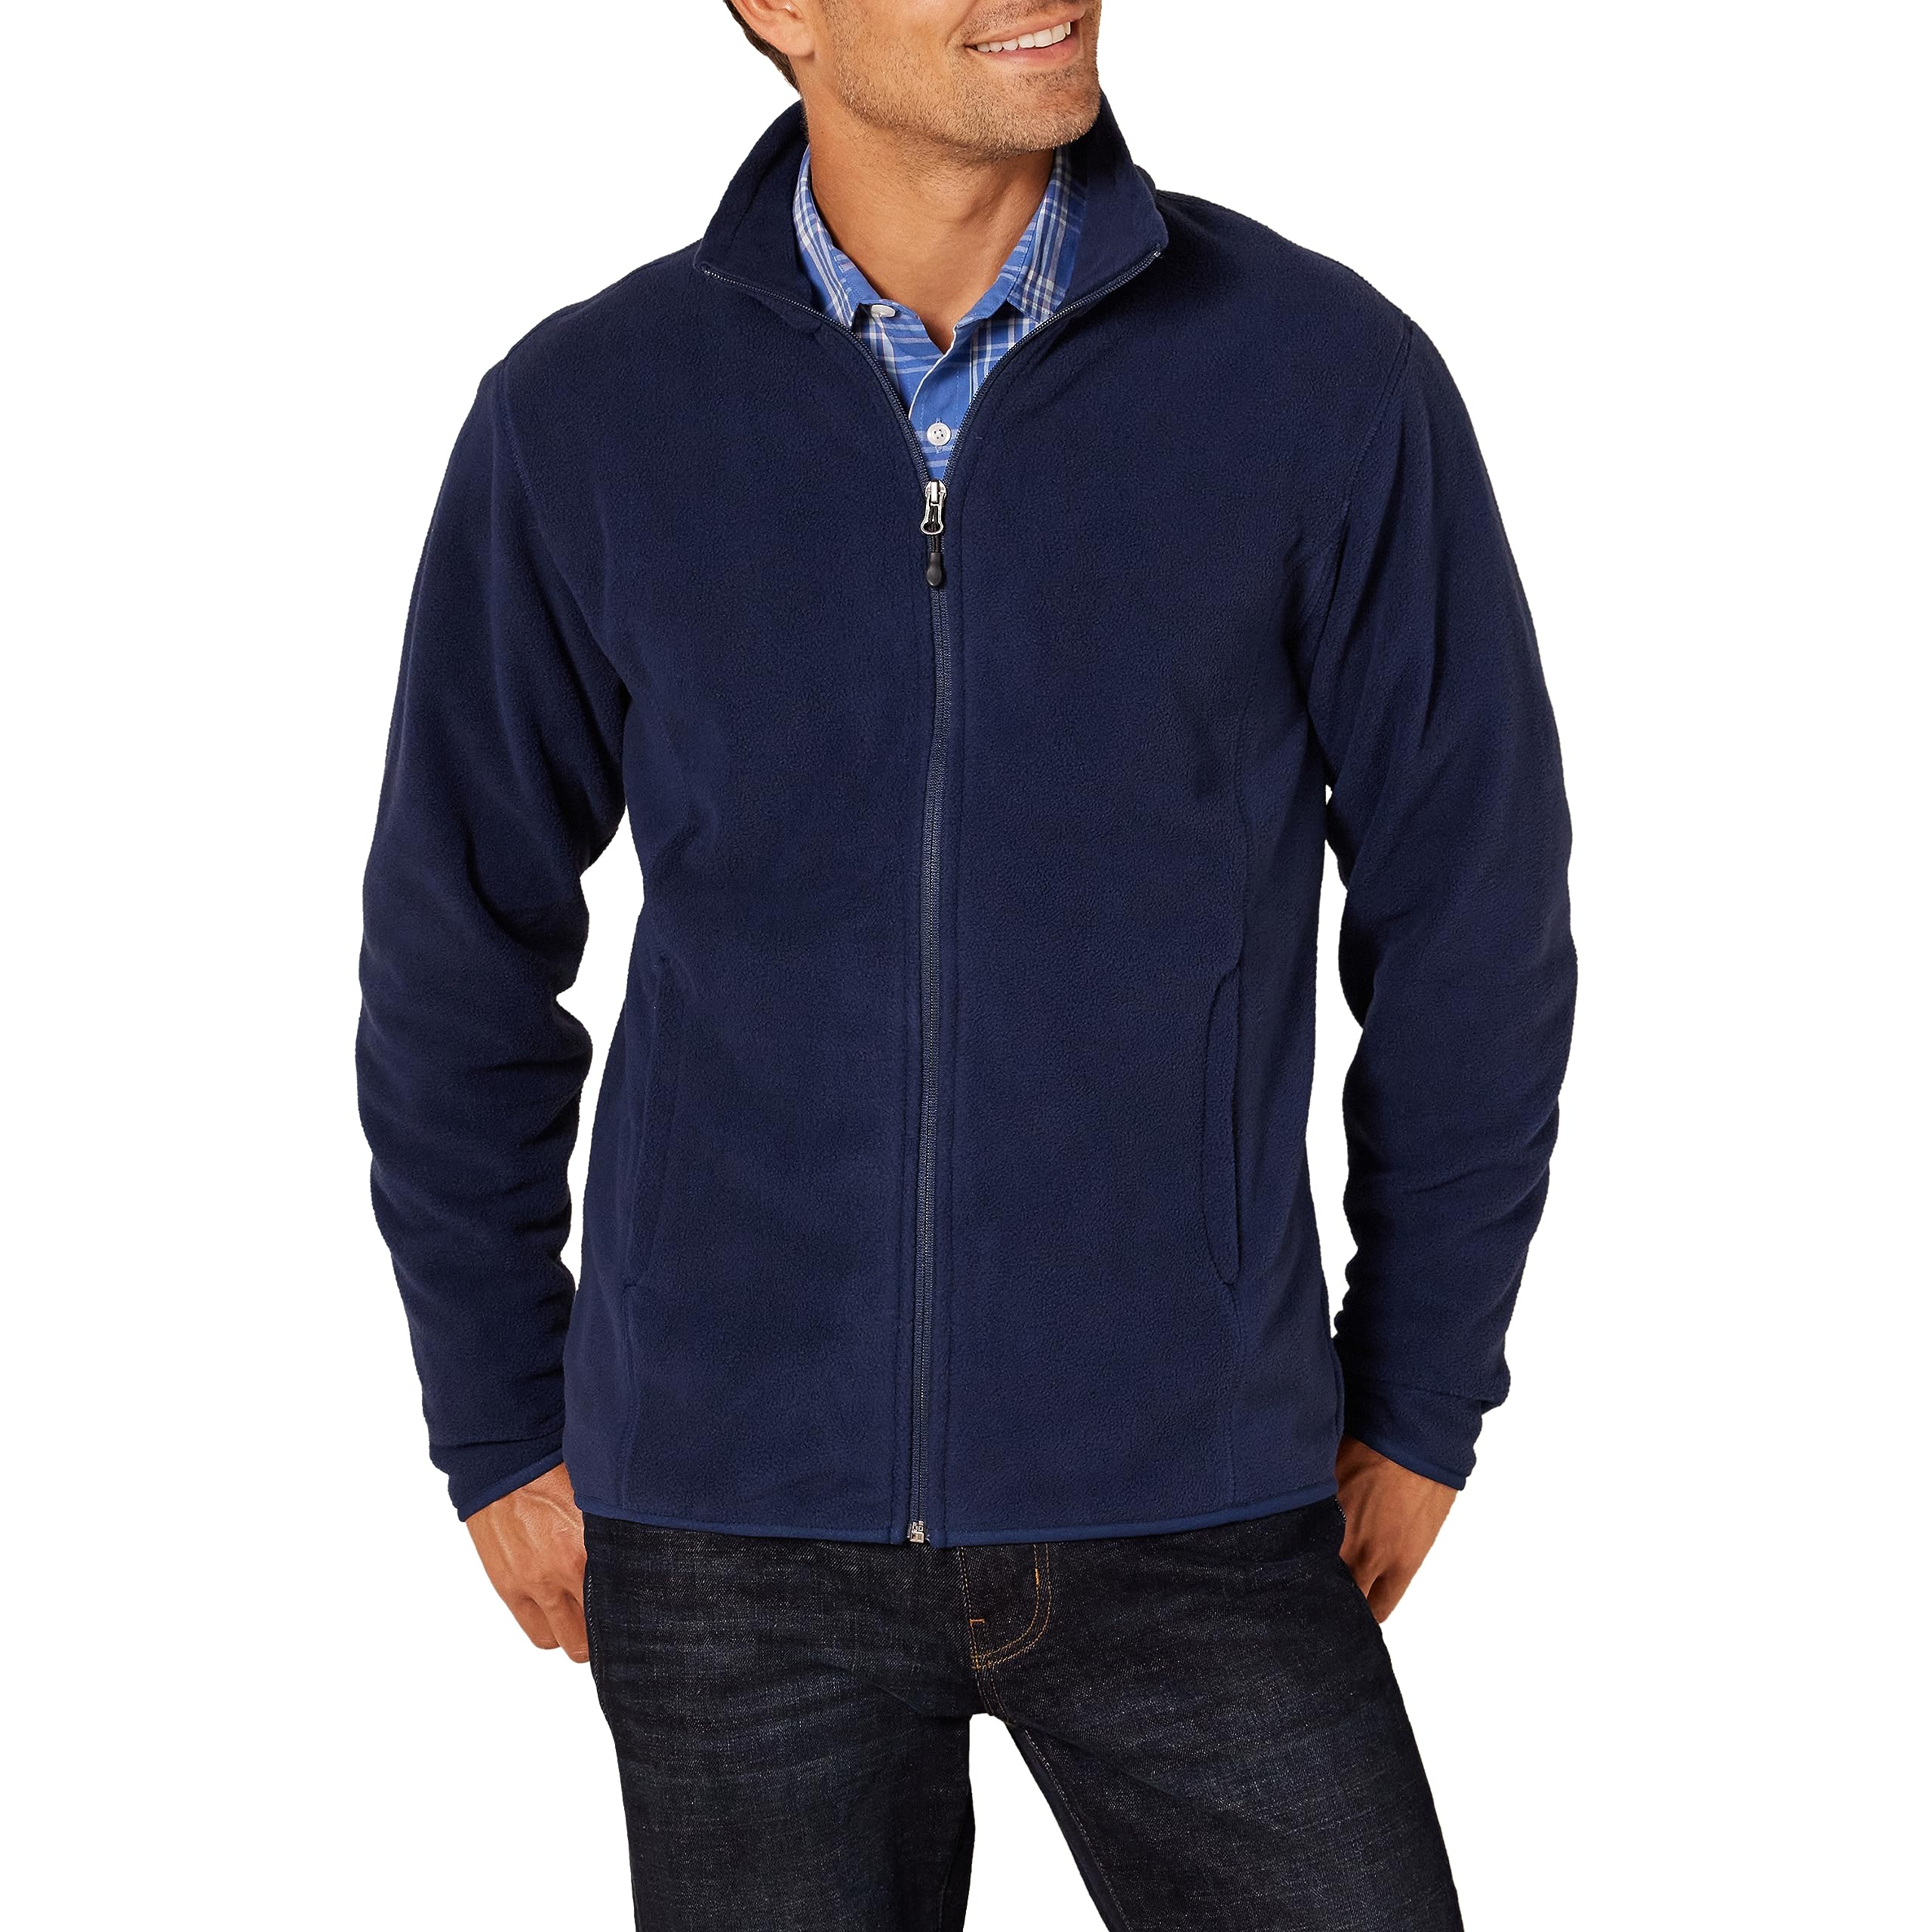 Essentials Men's Full-Zip Polar Fleece Jacket (Available in Big & Tall)